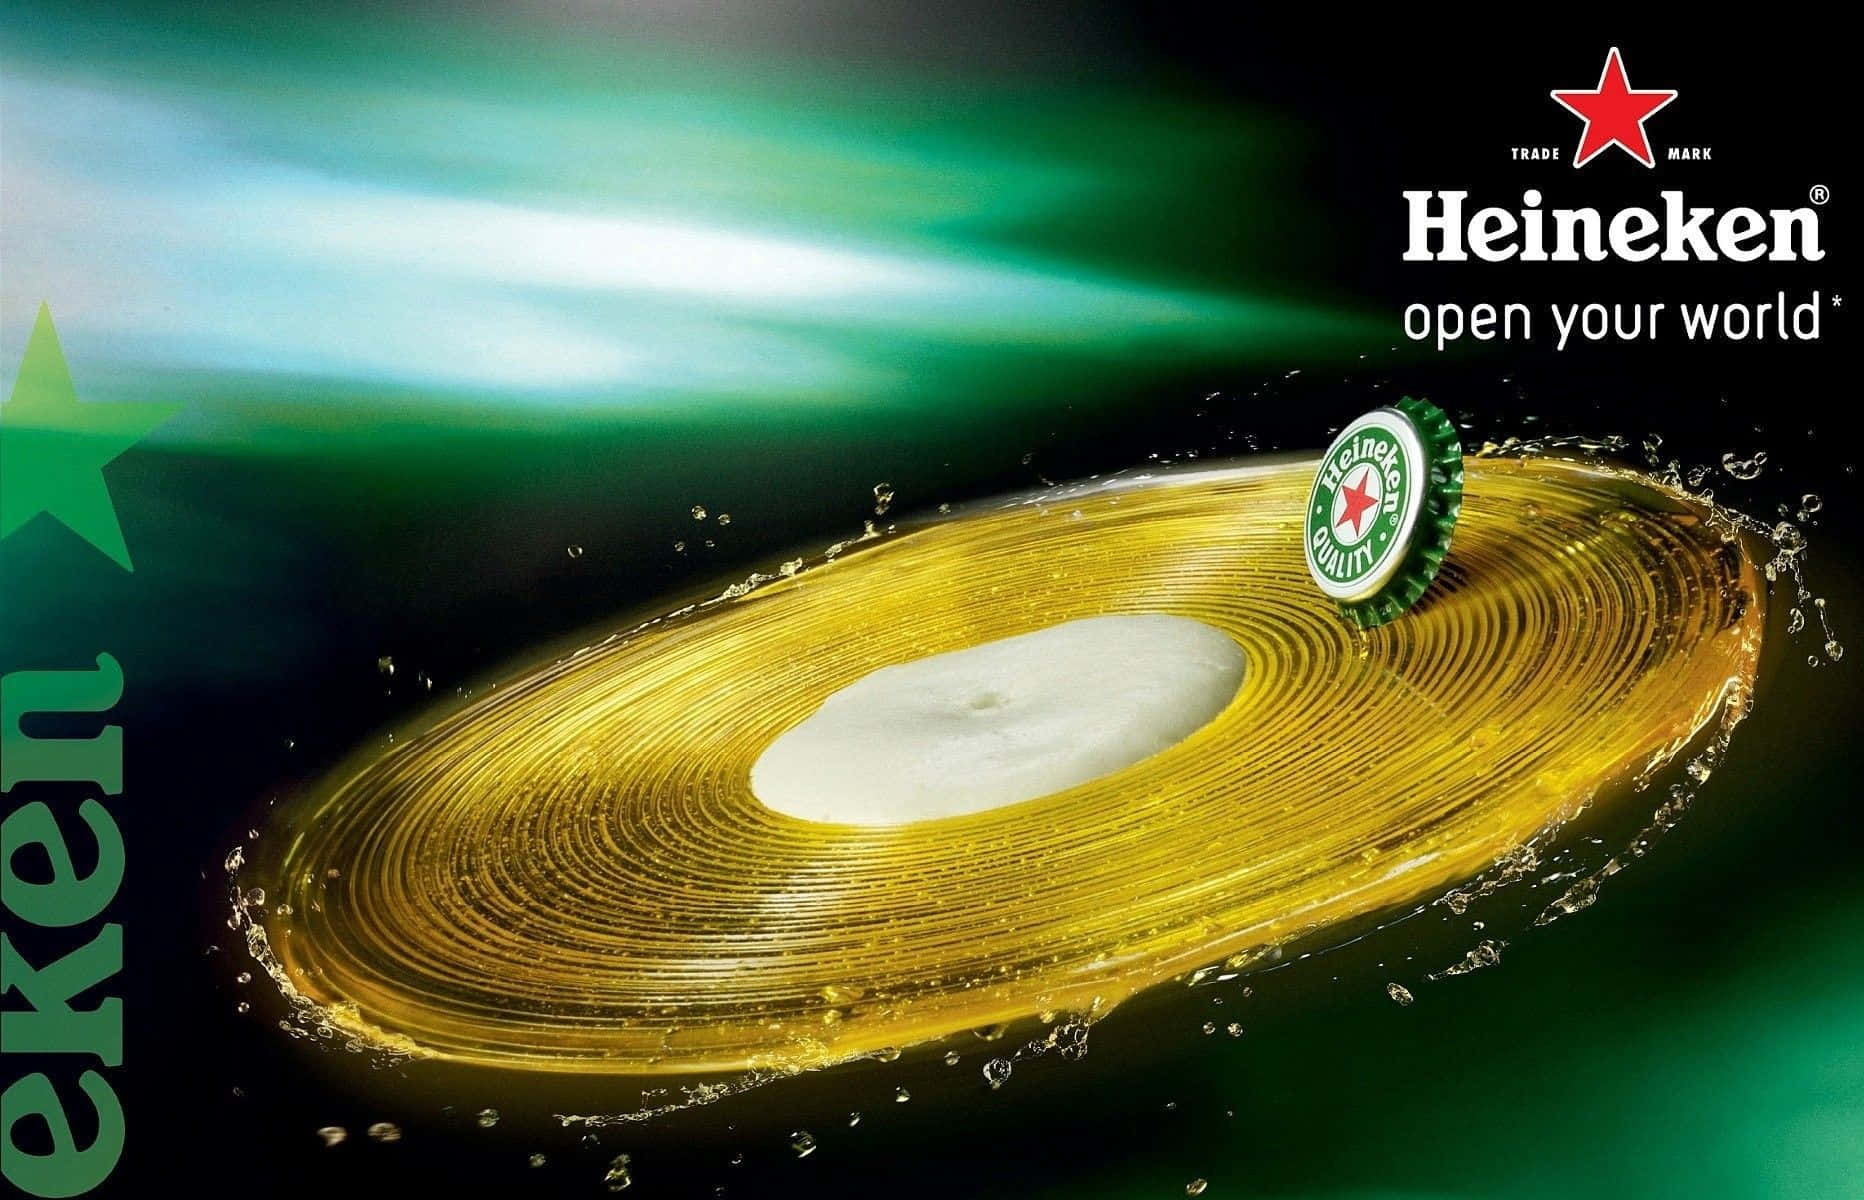 Heineken Logo on Refreshing Cold Beer